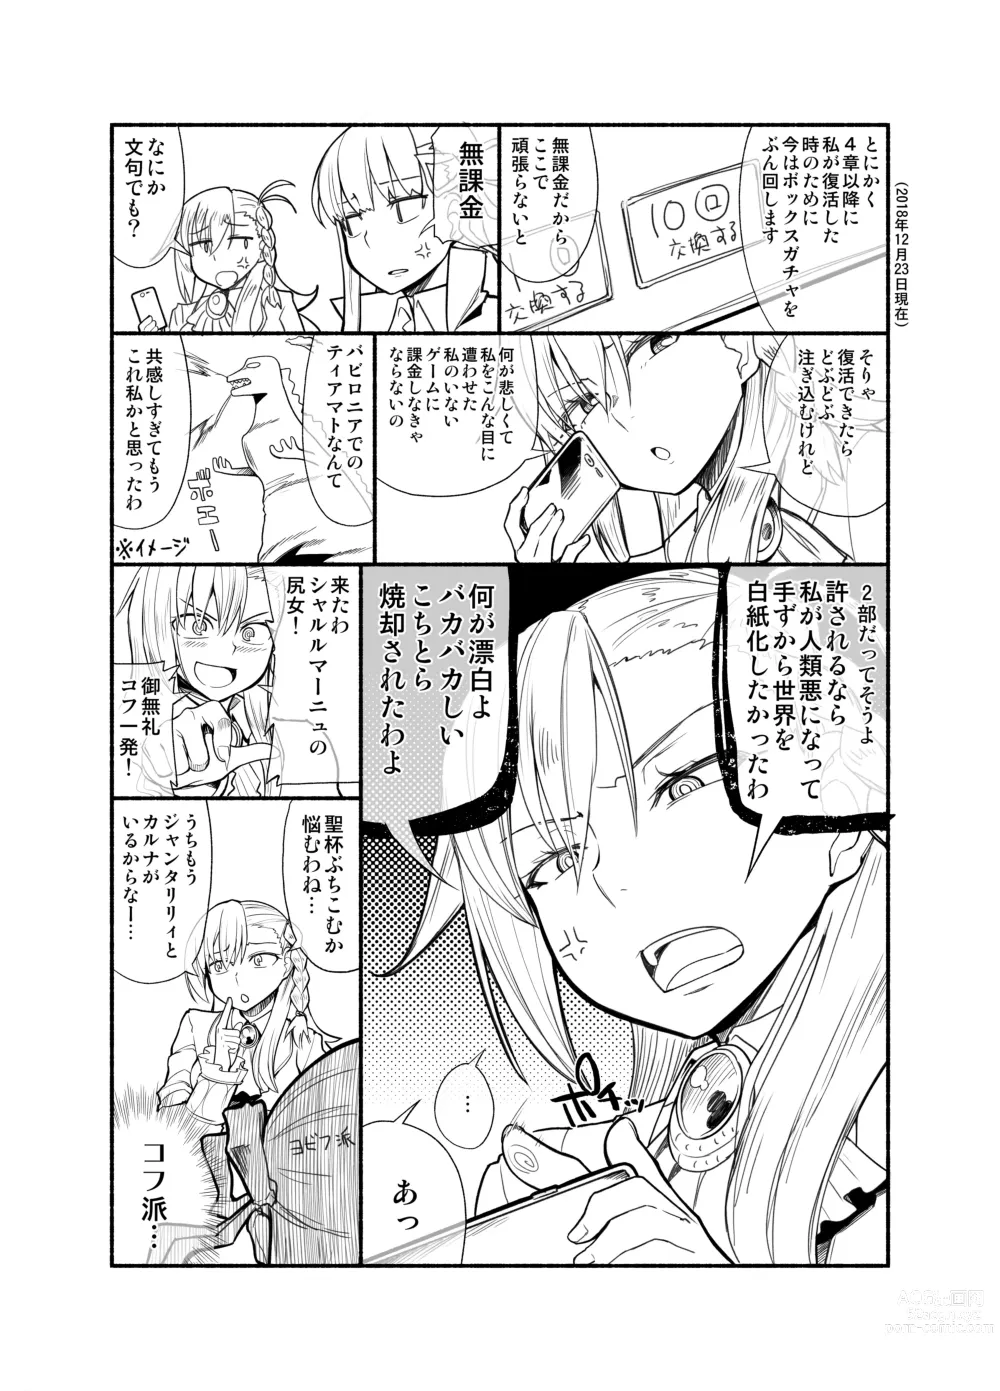 Page 26 of doujinshi Sentei Jishou dakara Hazukashikunai mon